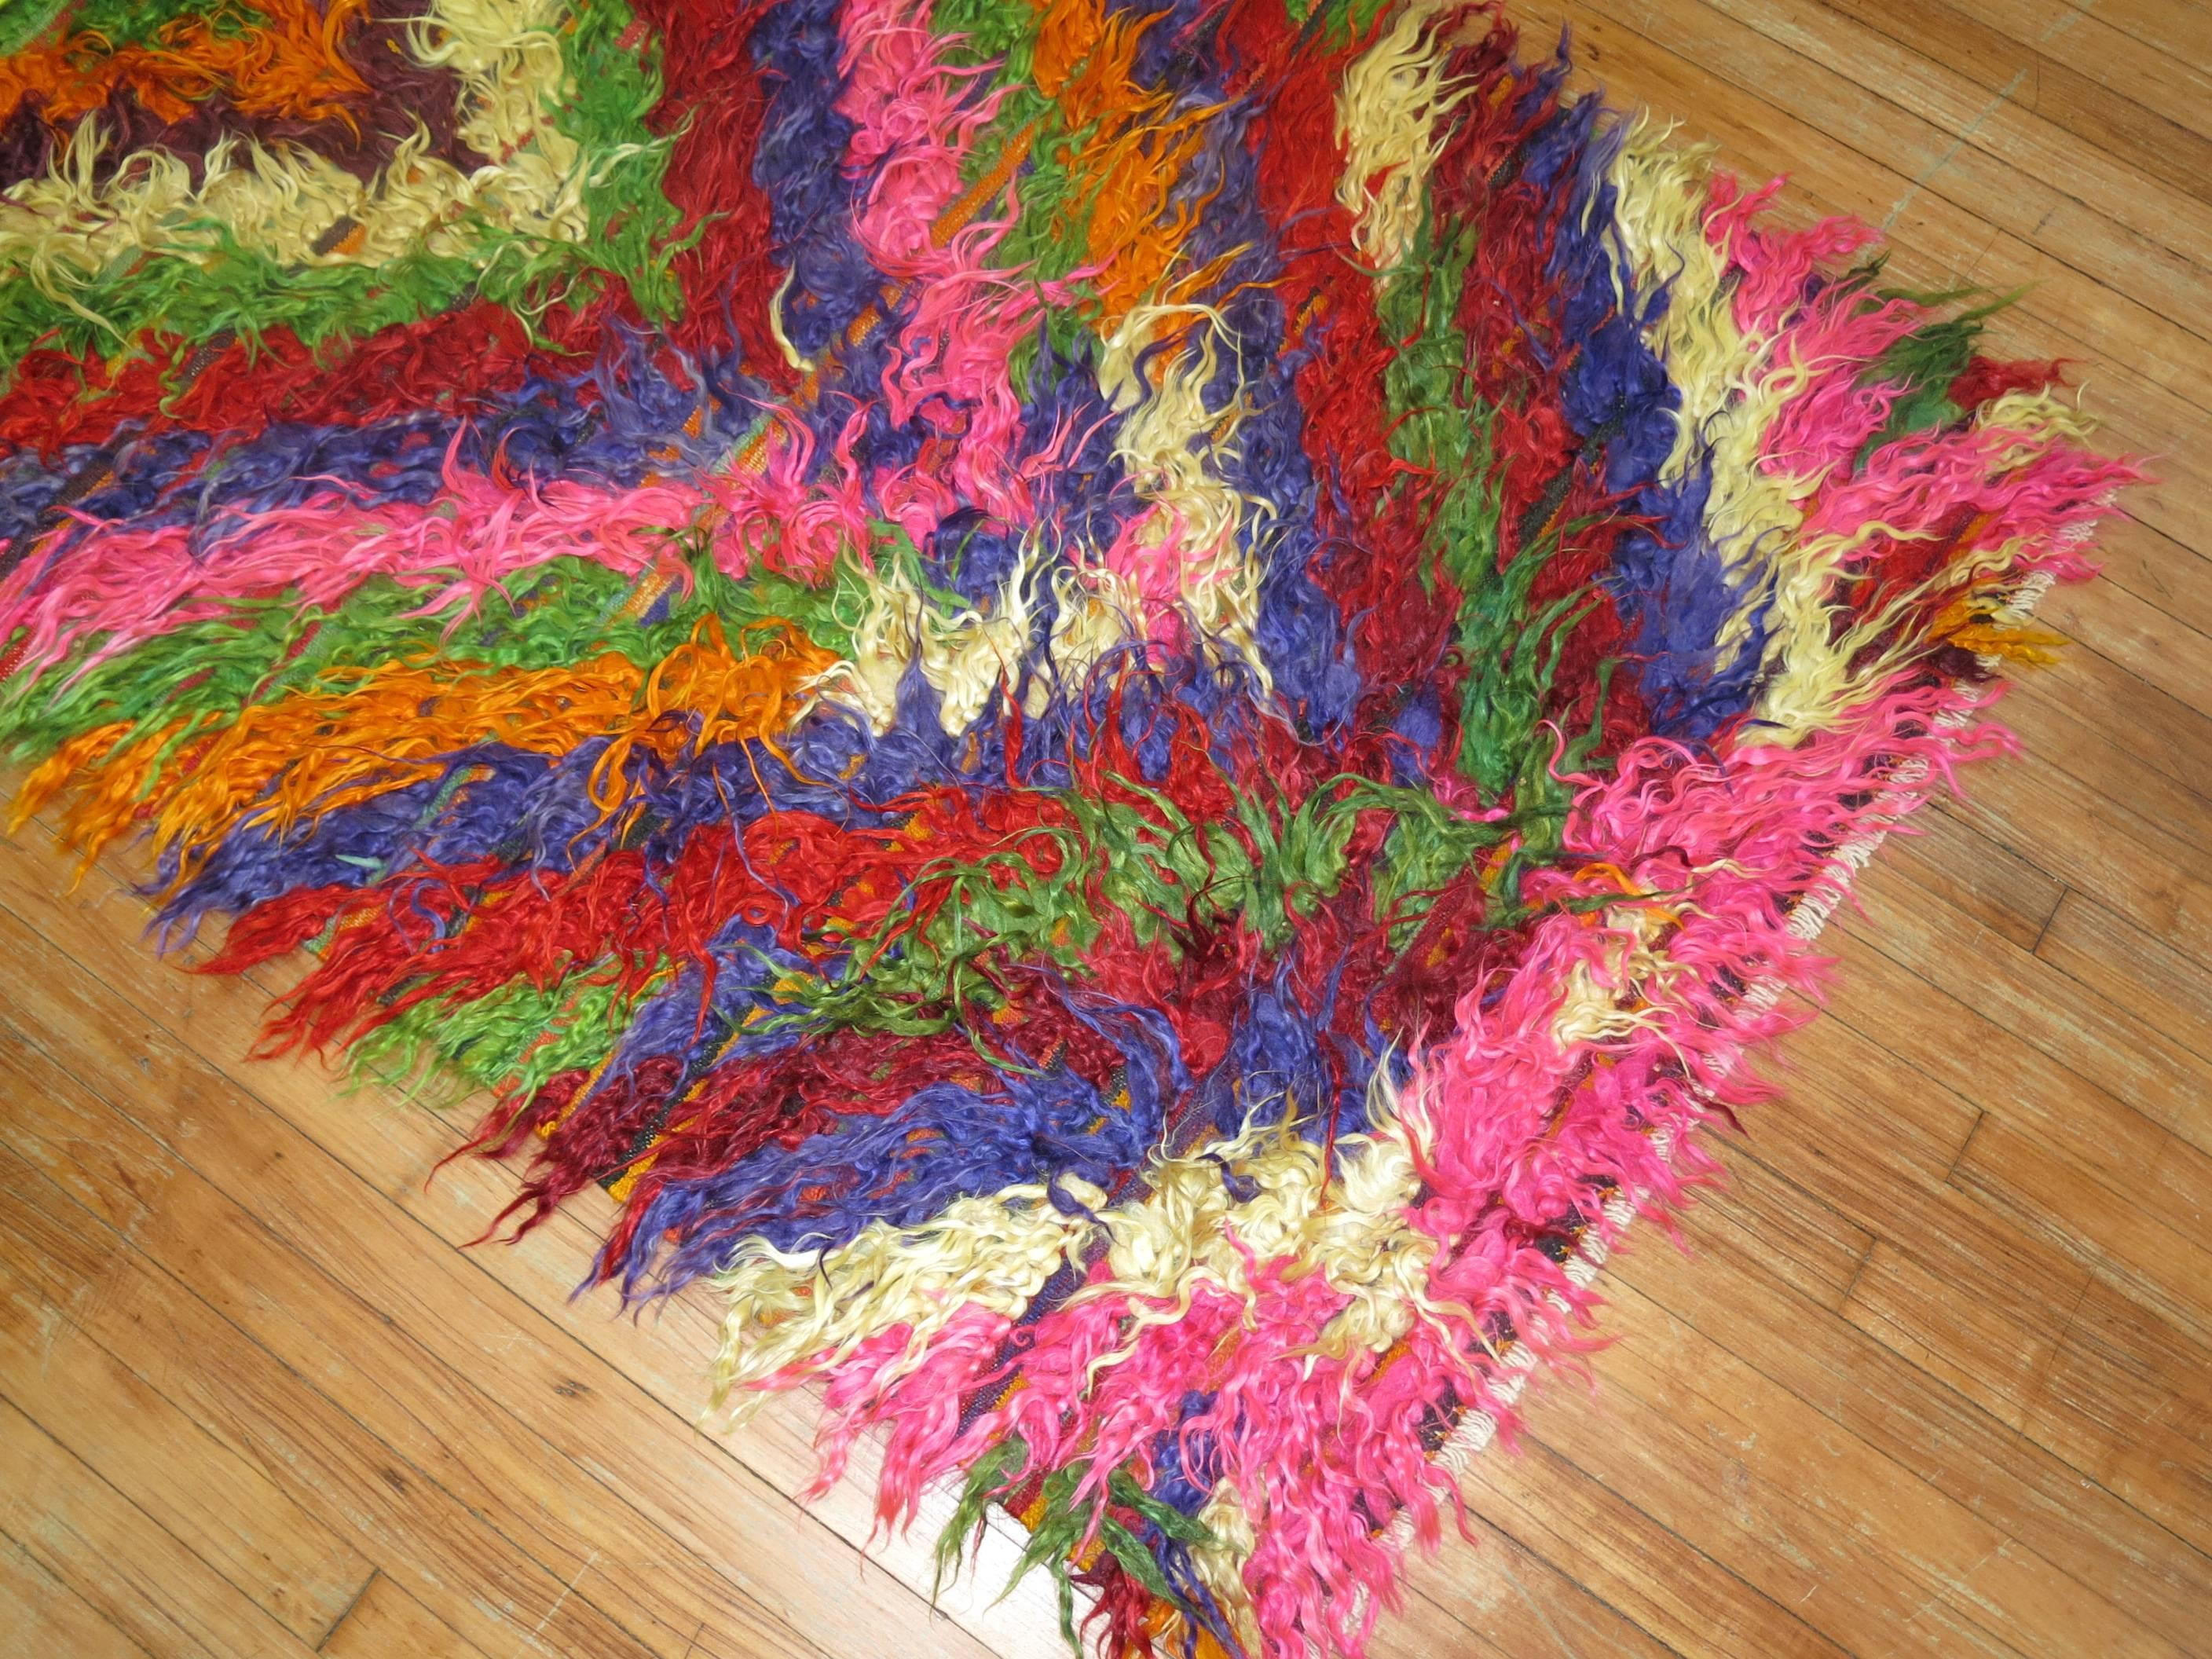 Les couleurs sauvages mettent en valeur ce tapis turc Tulu Shag du troisième quart du 20e siècle

Mesures : 3'7